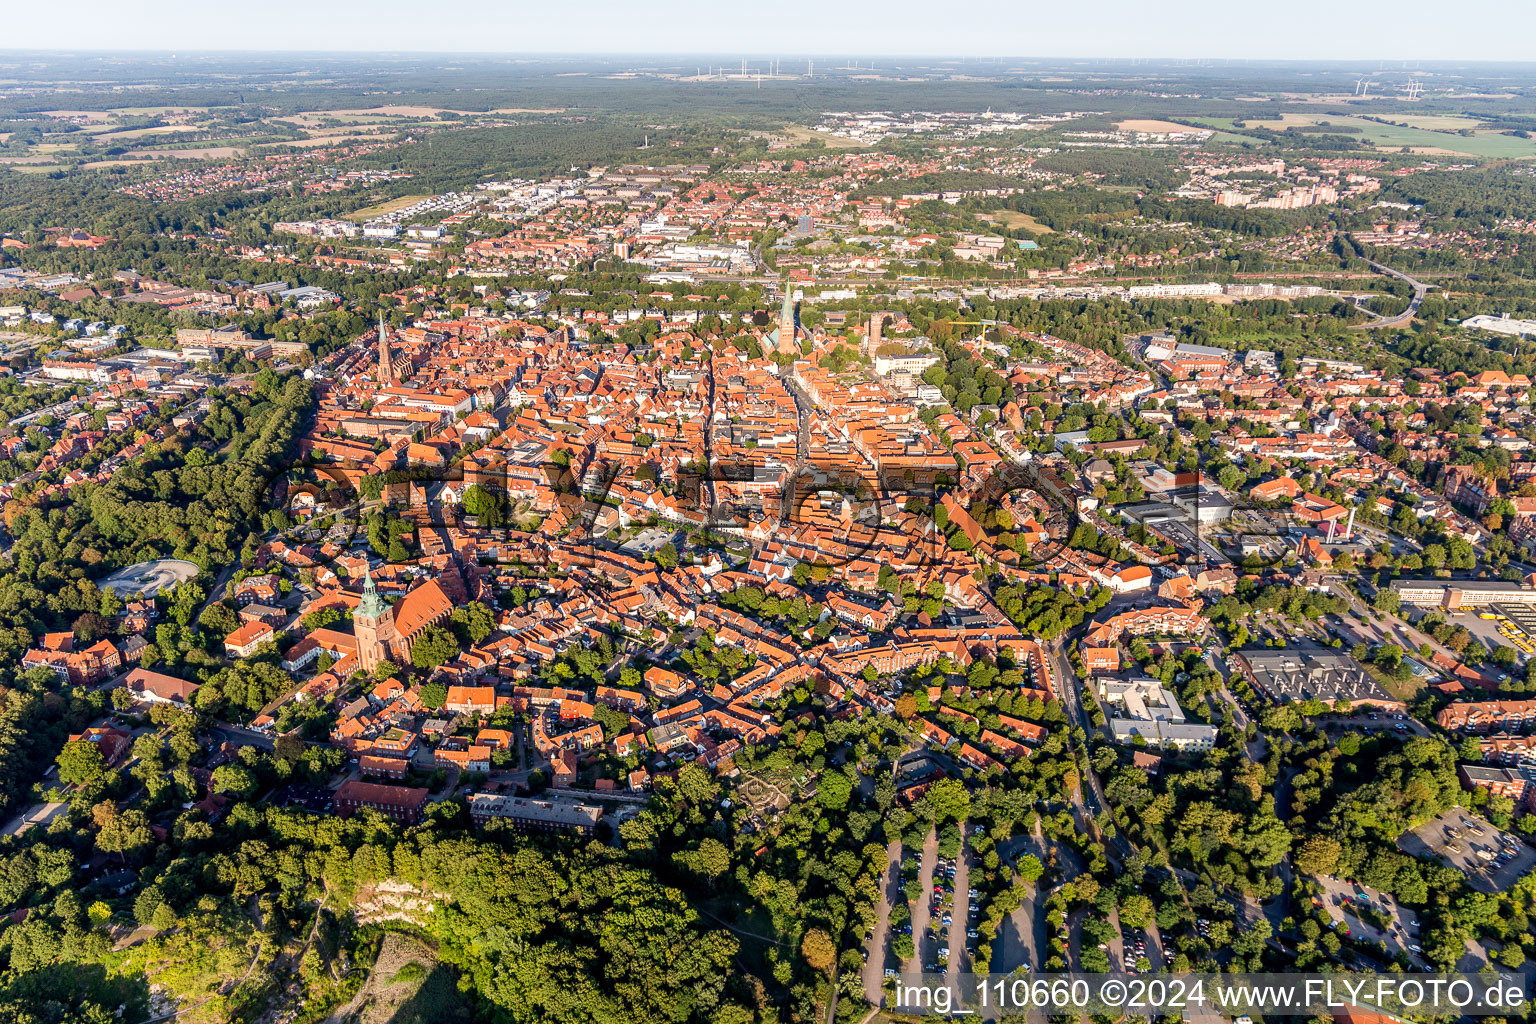 Drohnenbild von Altstadtbereich und Innenstadtzentrum in Lüneburg im Bundesland Niedersachsen, Deutschland